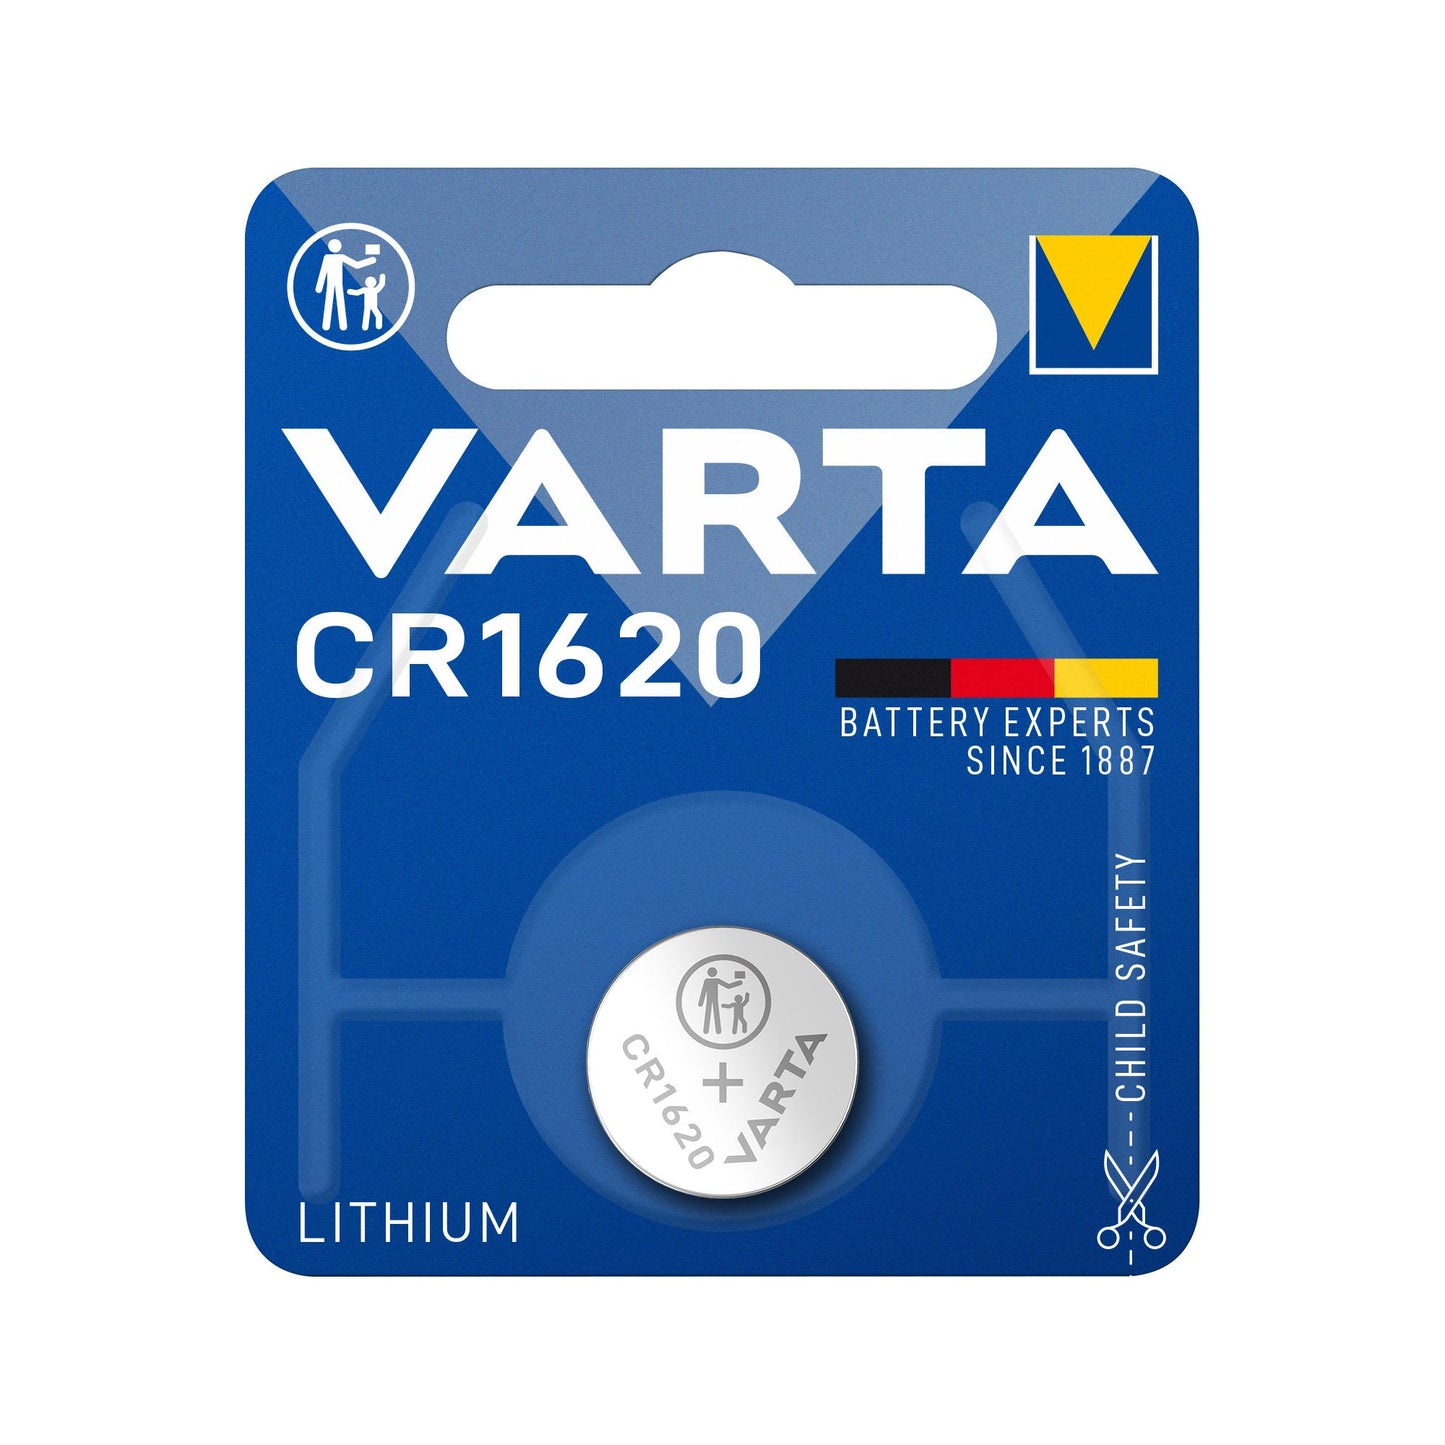 VARTA Batterie Lithium Knopfzelle CR1620, 3V Electronics, Retail Blister (1-Pack)